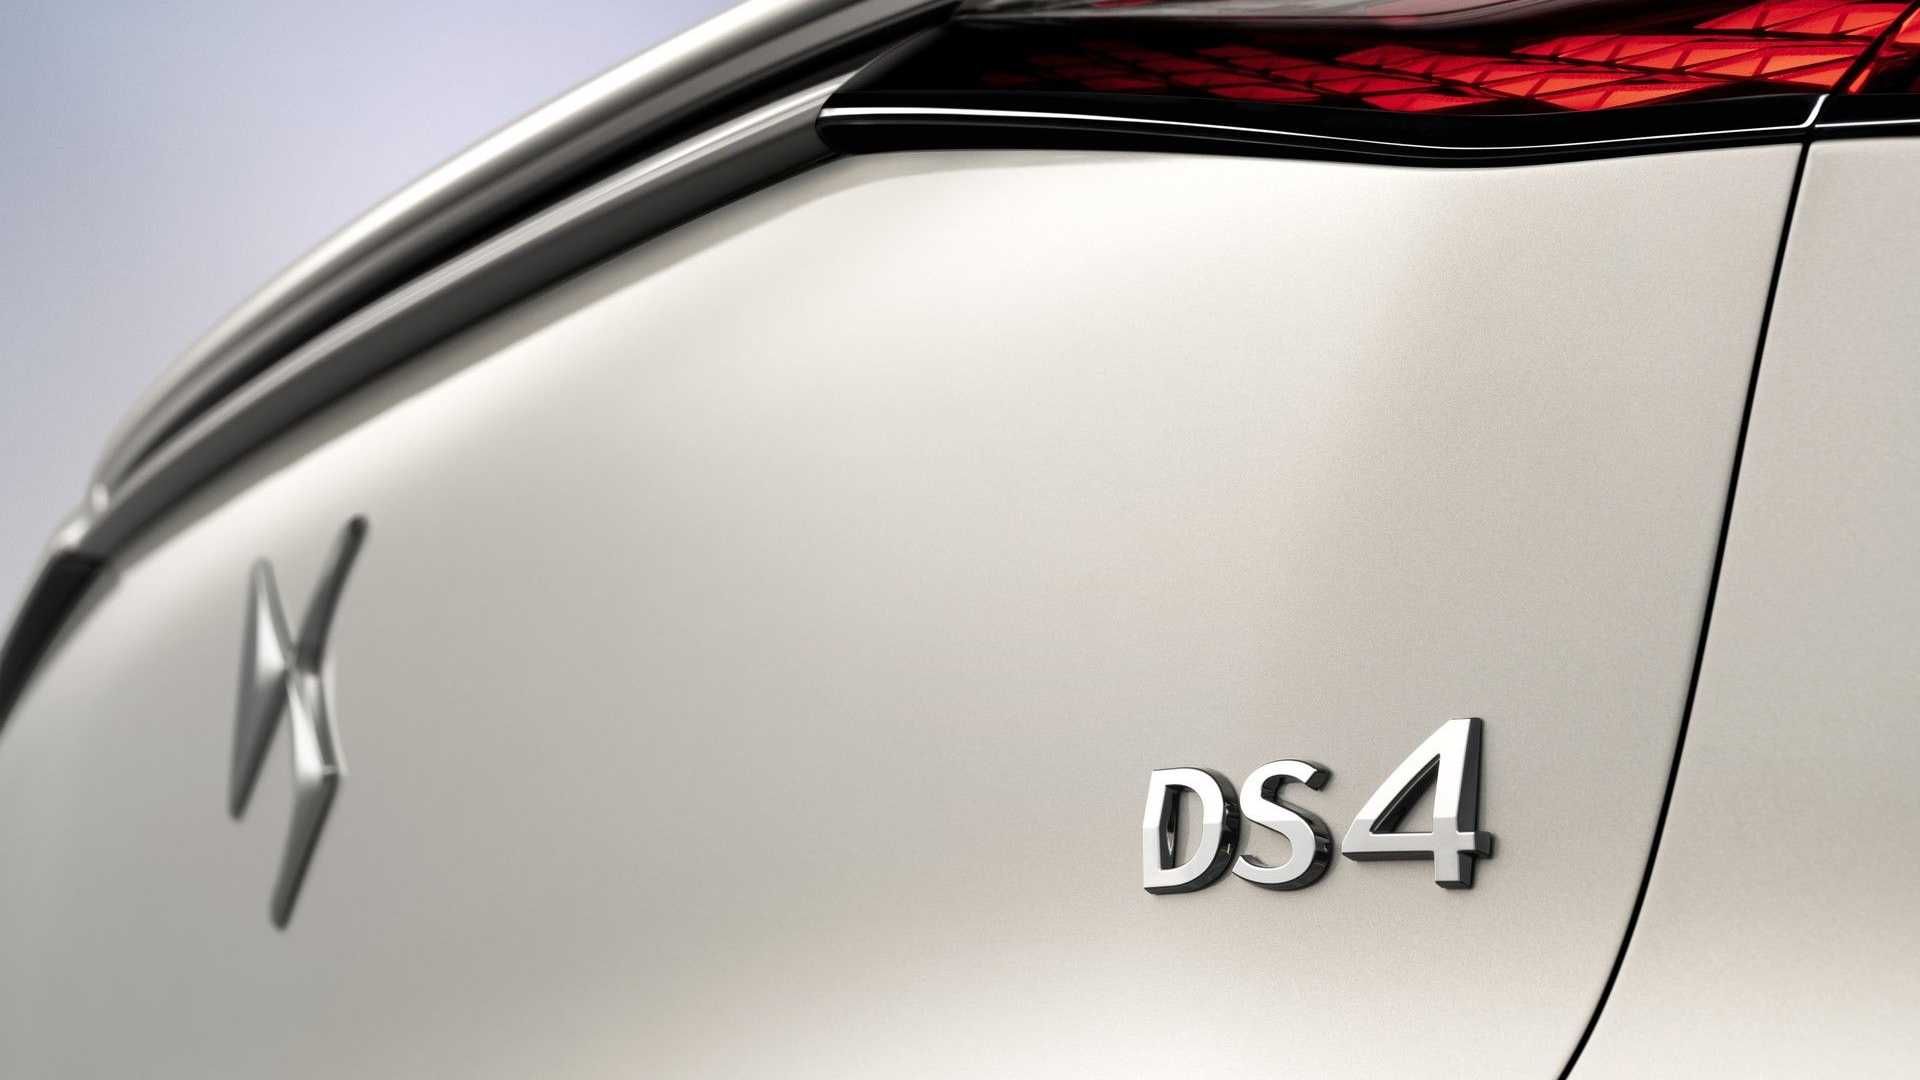   DS 4 دی اس 4 مدل 2022 نمای زیر چراغ